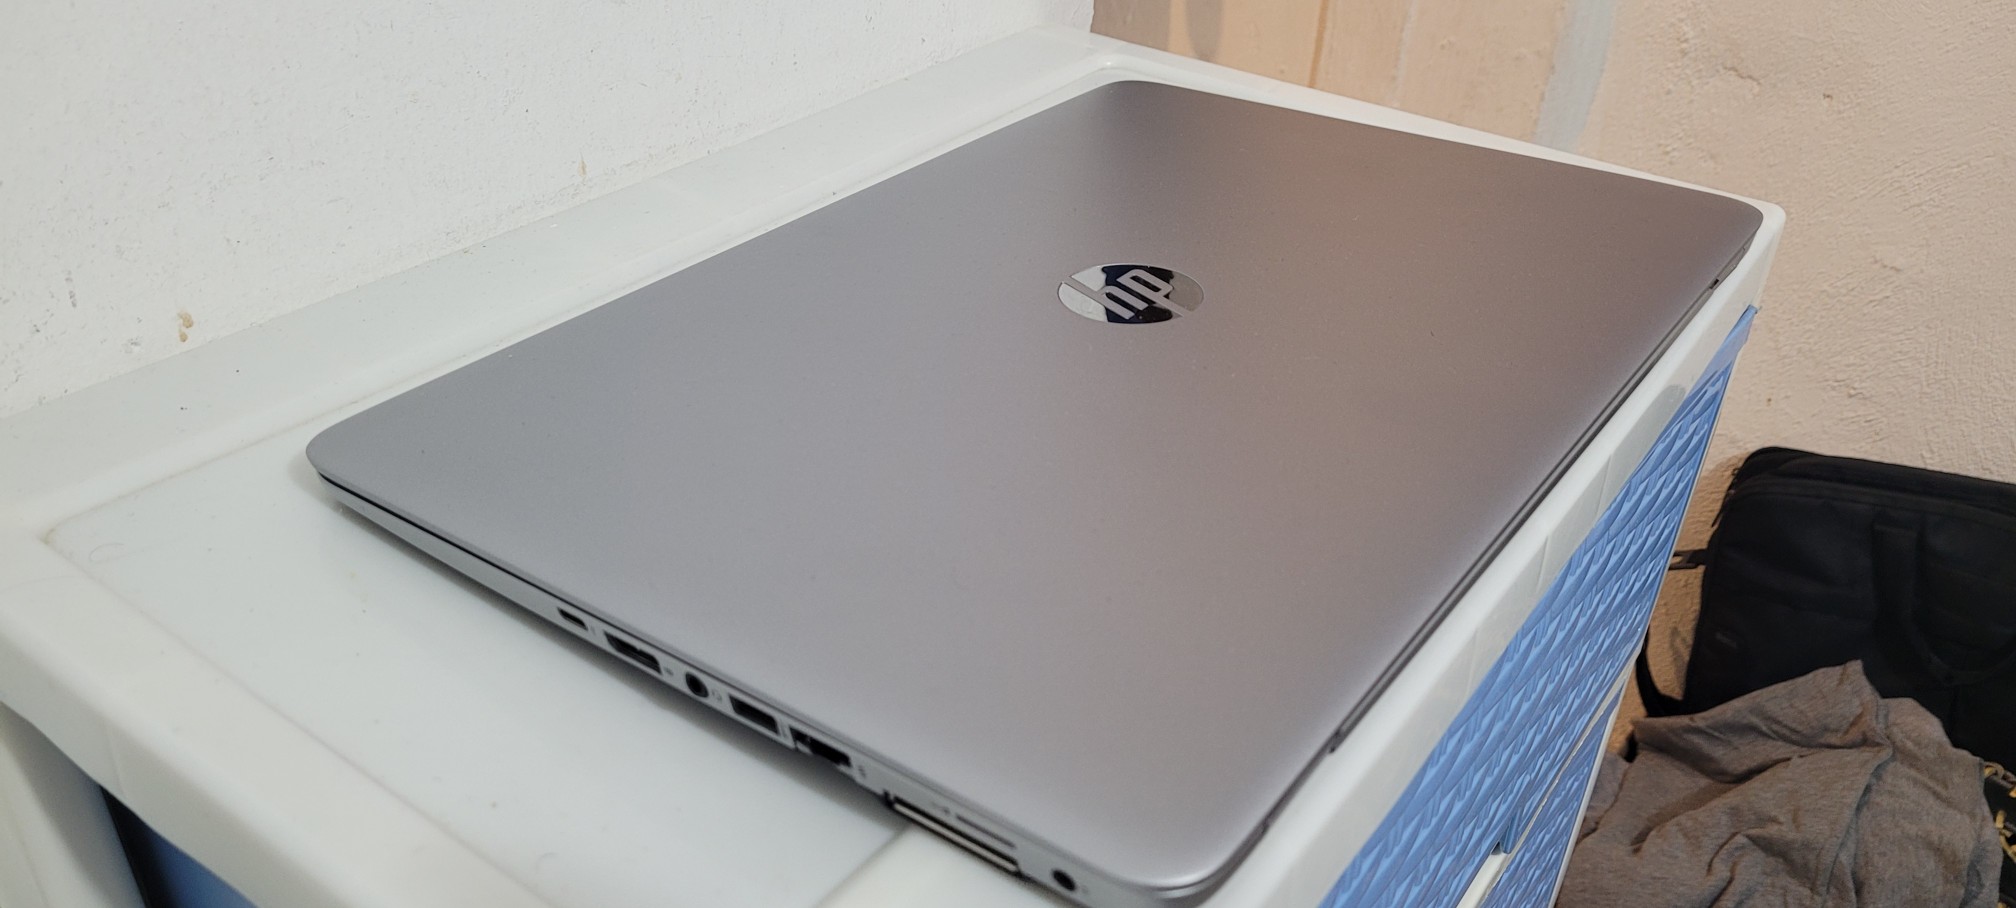 computadoras y laptops - laptop hp Slim 14 Pulg Core i5 6ta Ram 8gb ddr4 Disco 128gb SSD Y 320gb 2